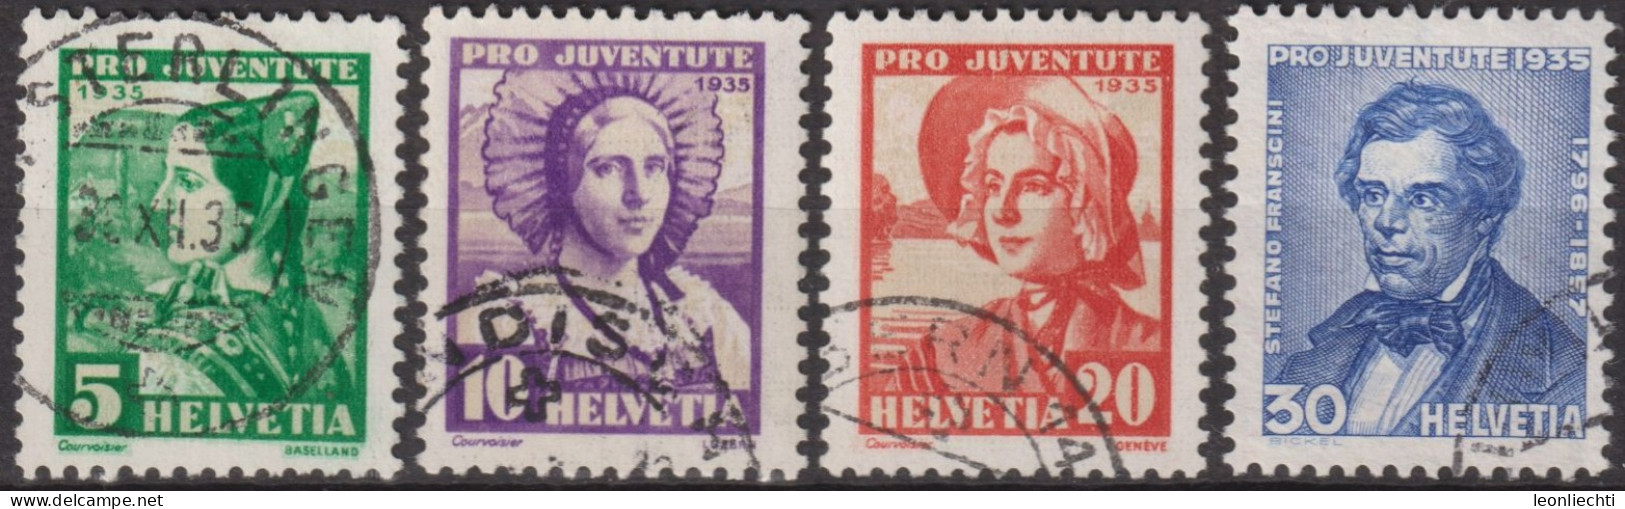 1935 Schweiz / Pro Juventute ° Zum:CH J73-J76, Mi:CH 287-290, Yt:CH 282-285, Frauentrachten, Stefano Franscini - Used Stamps